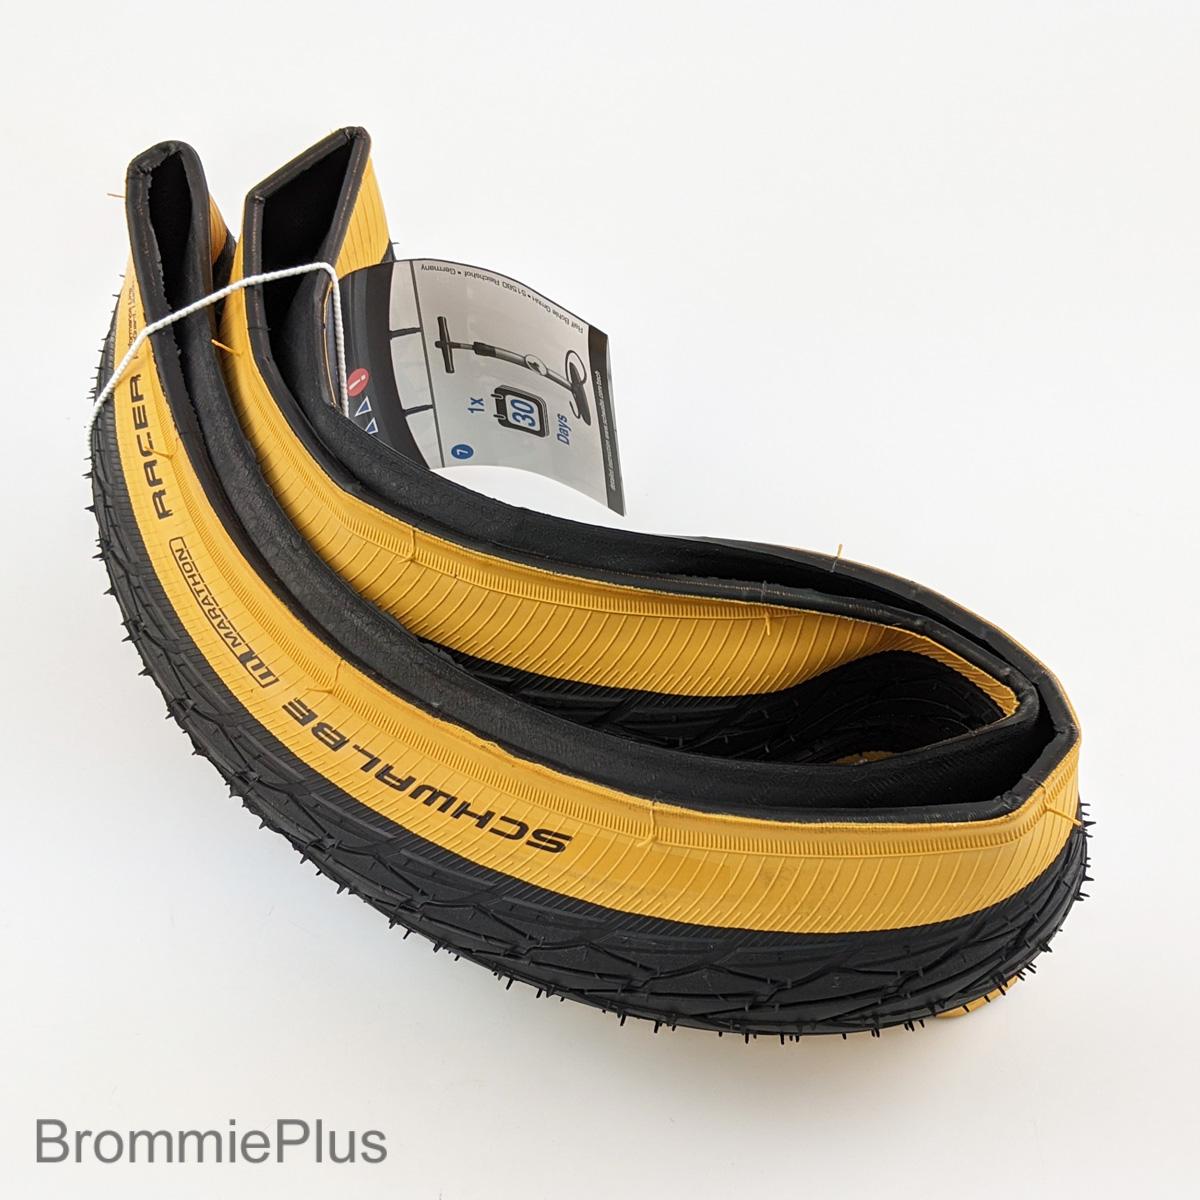 Schwalbe Marathon Ra|-Brommieplus-Products